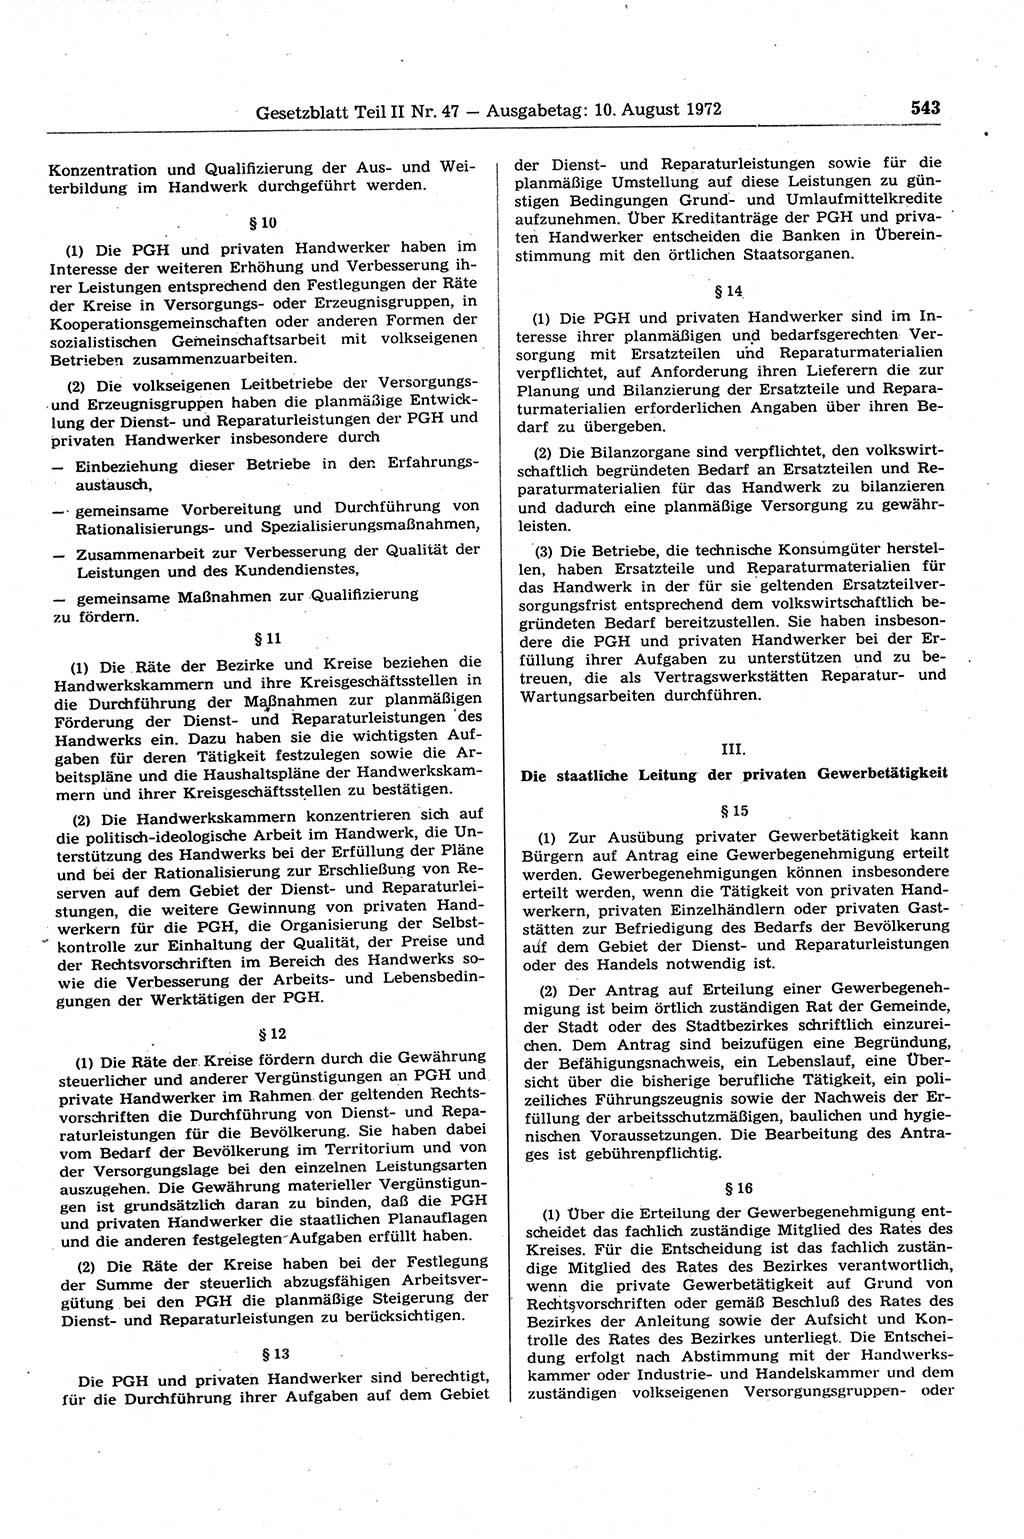 Gesetzblatt (GBl.) der Deutschen Demokratischen Republik (DDR) Teil ⅠⅠ 1972, Seite 543 (GBl. DDR ⅠⅠ 1972, S. 543)